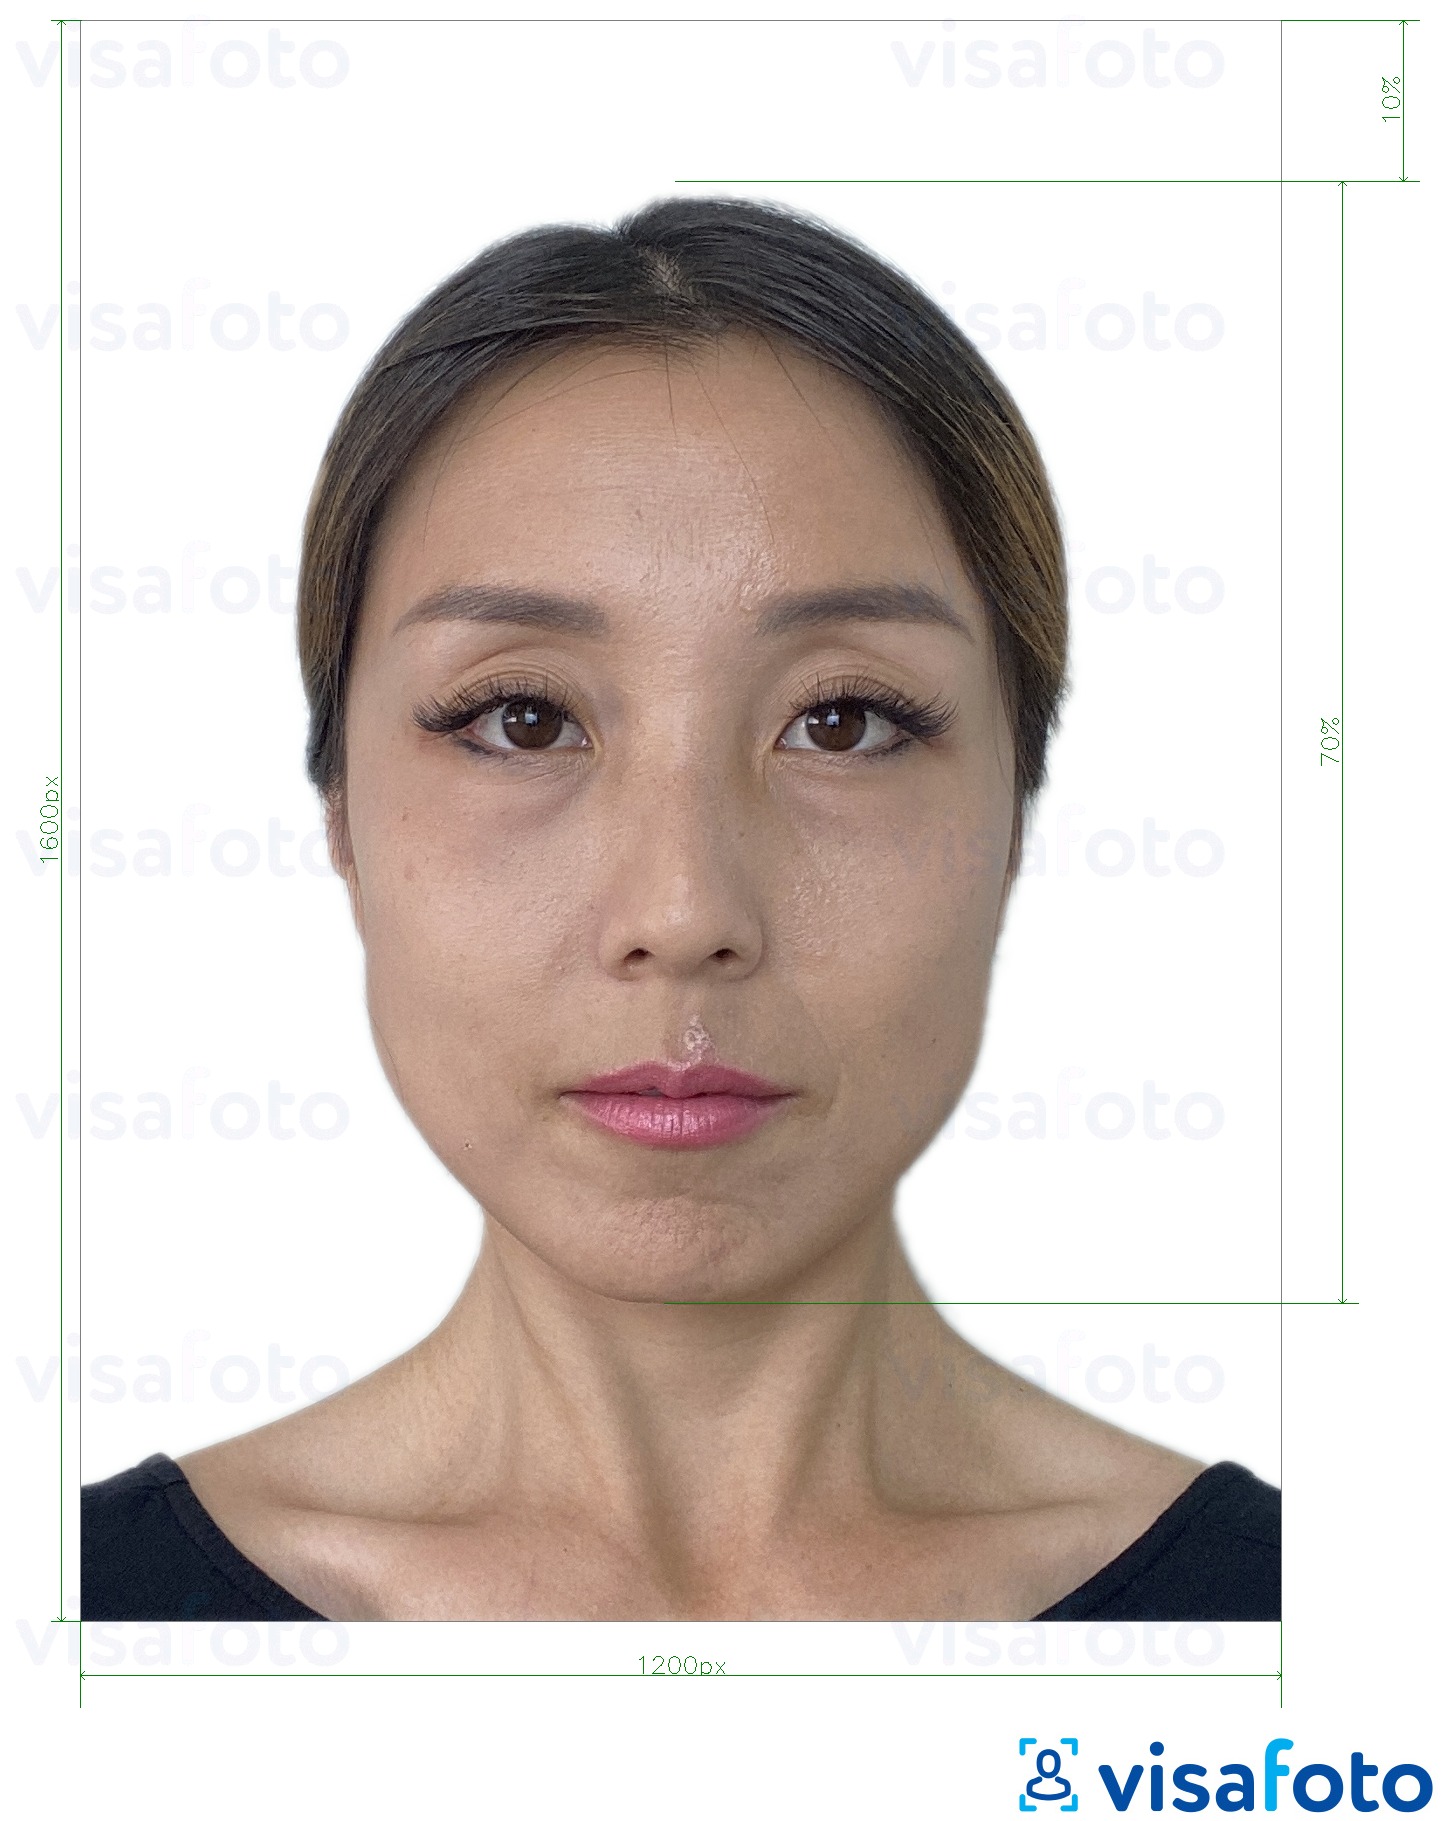 Образец фотографии для Электронный паспорт Гонконга 1200x1600 пикселей с точными размерами